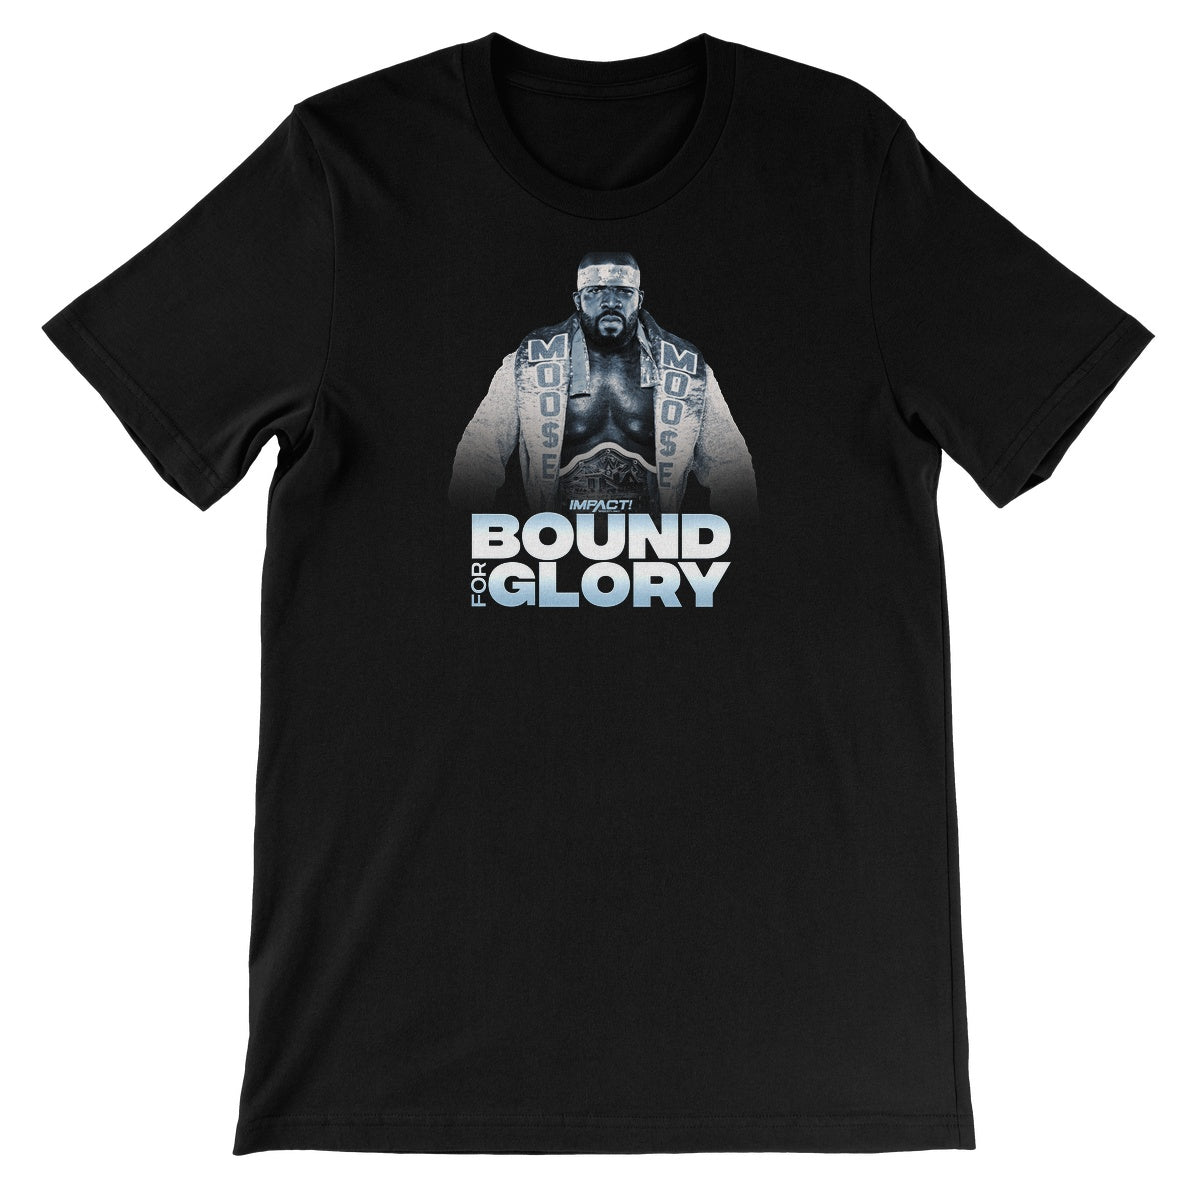 Bound For Glory 2020 - Moose Unisex Short Sleeve T-Shirt